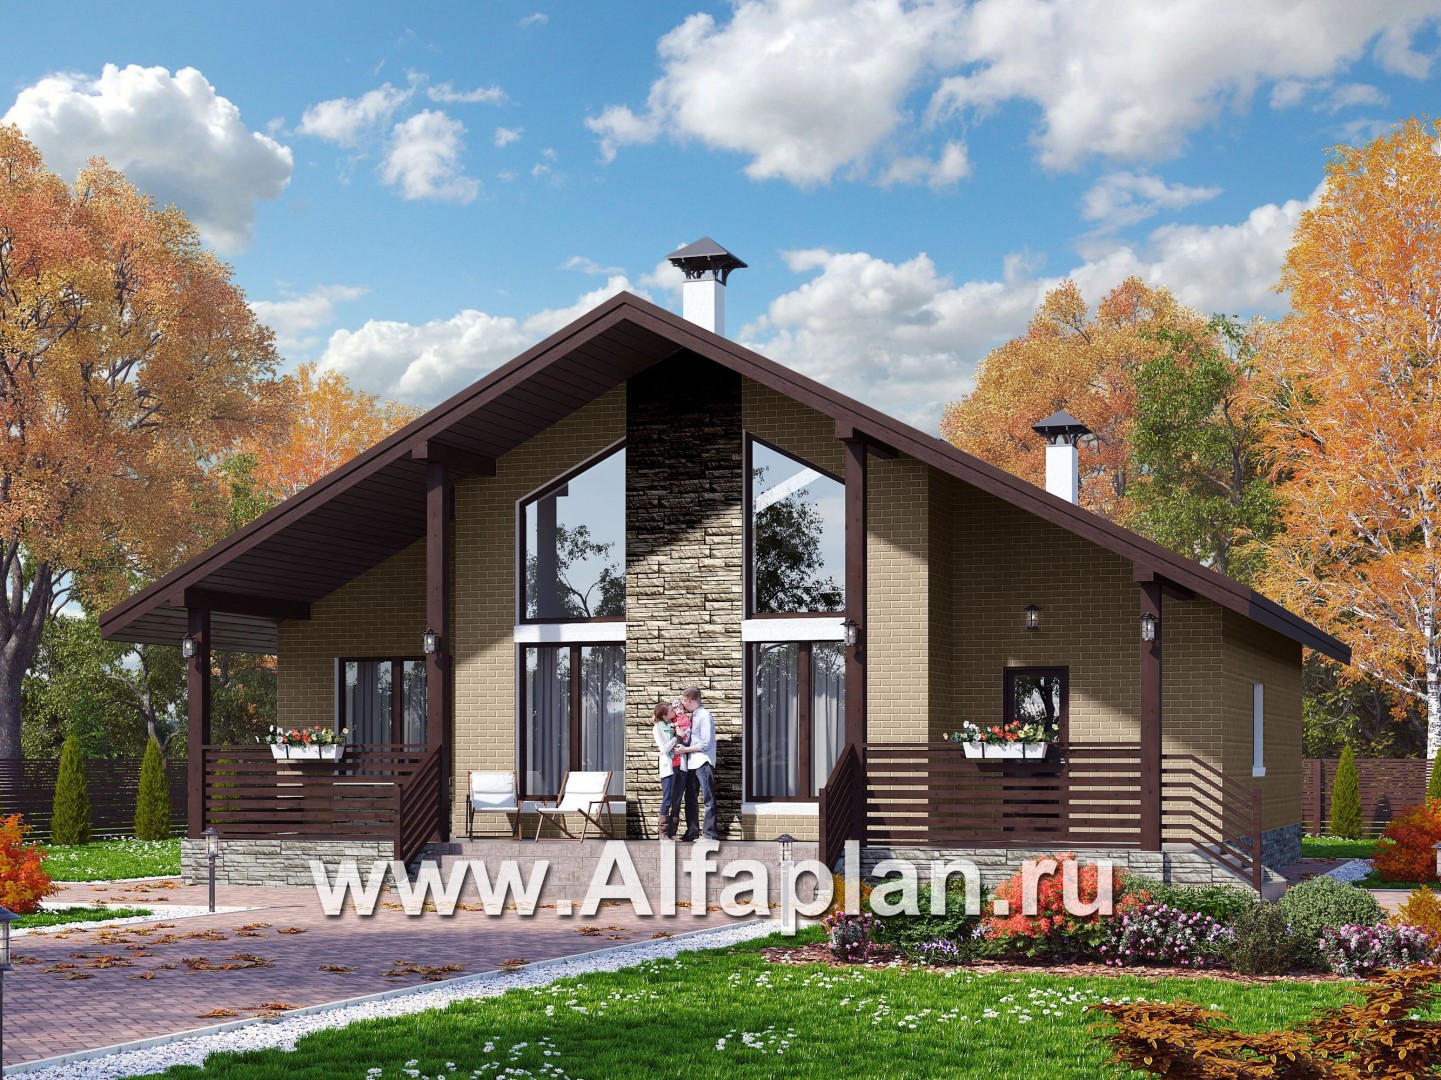 Проекты домов Альфаплан - «Моризо» - проект дома с мансардой, планировка с двусветной гостиной и 2 спальни на 1 эт, шале с двускатной крышей - основное изображение